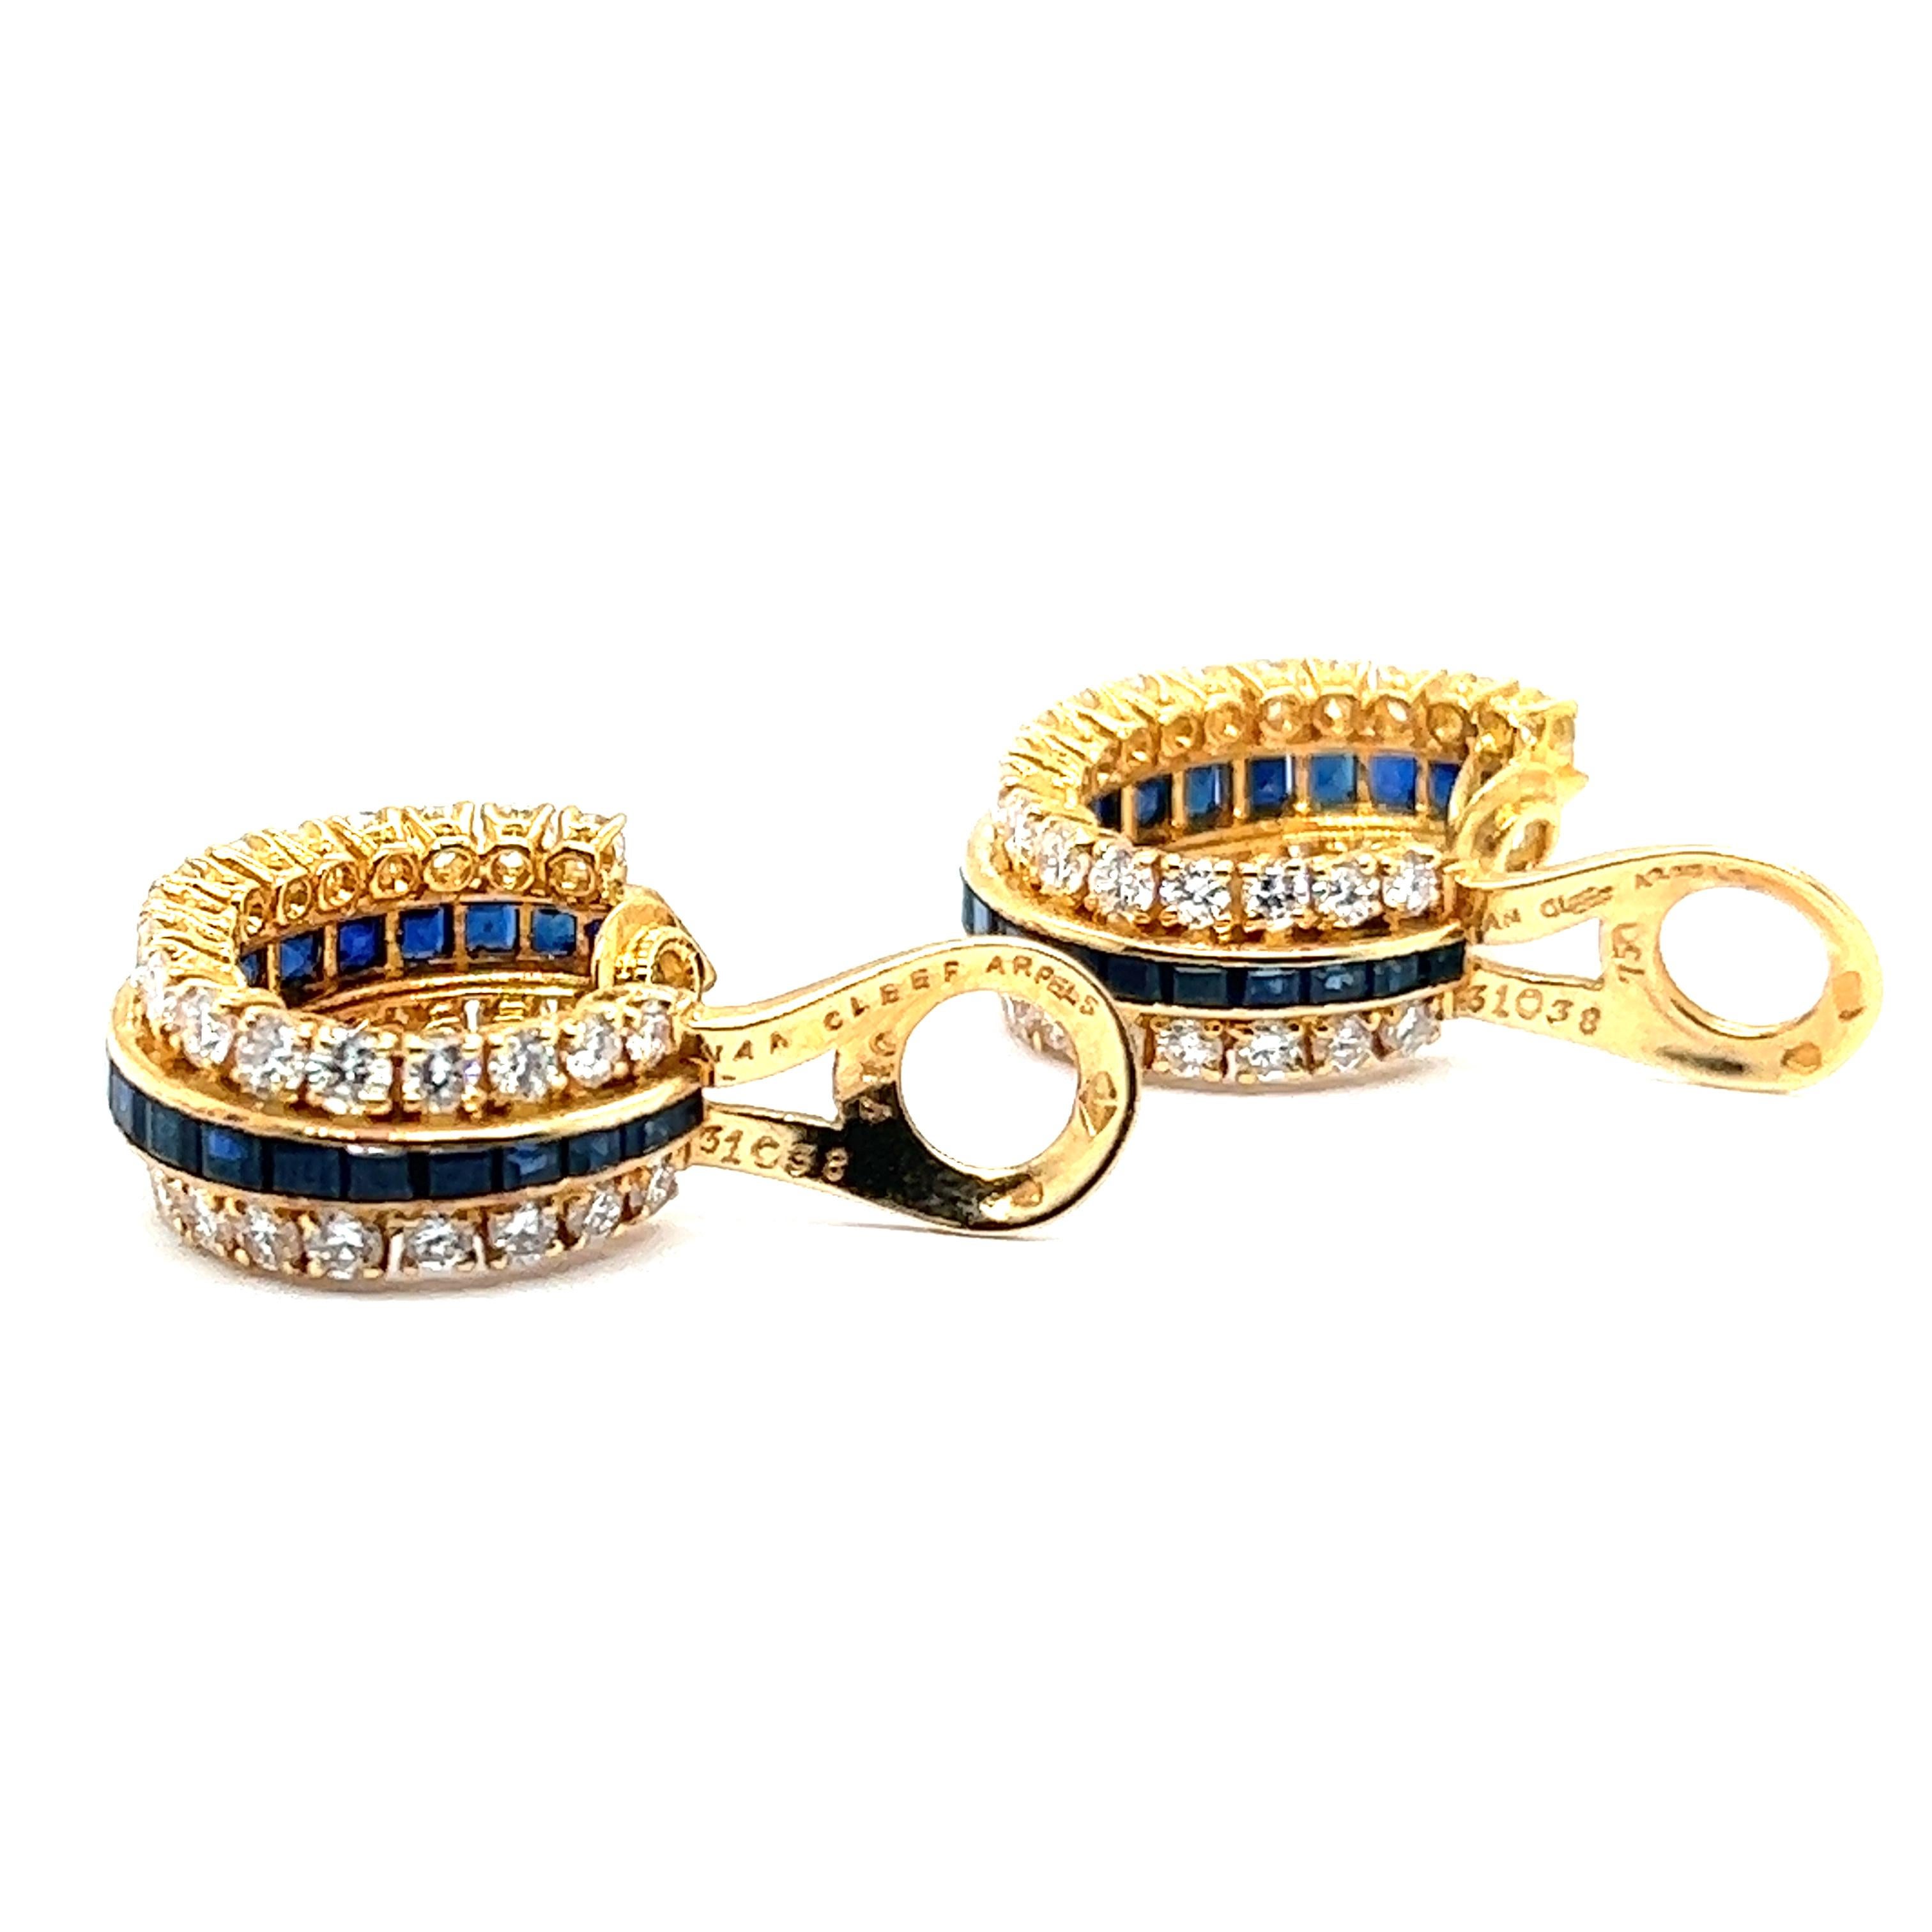 Women's or Men's Elegant Van Cleef & Arpels Earclips in 18K Gold with Sapphires and Diamonds